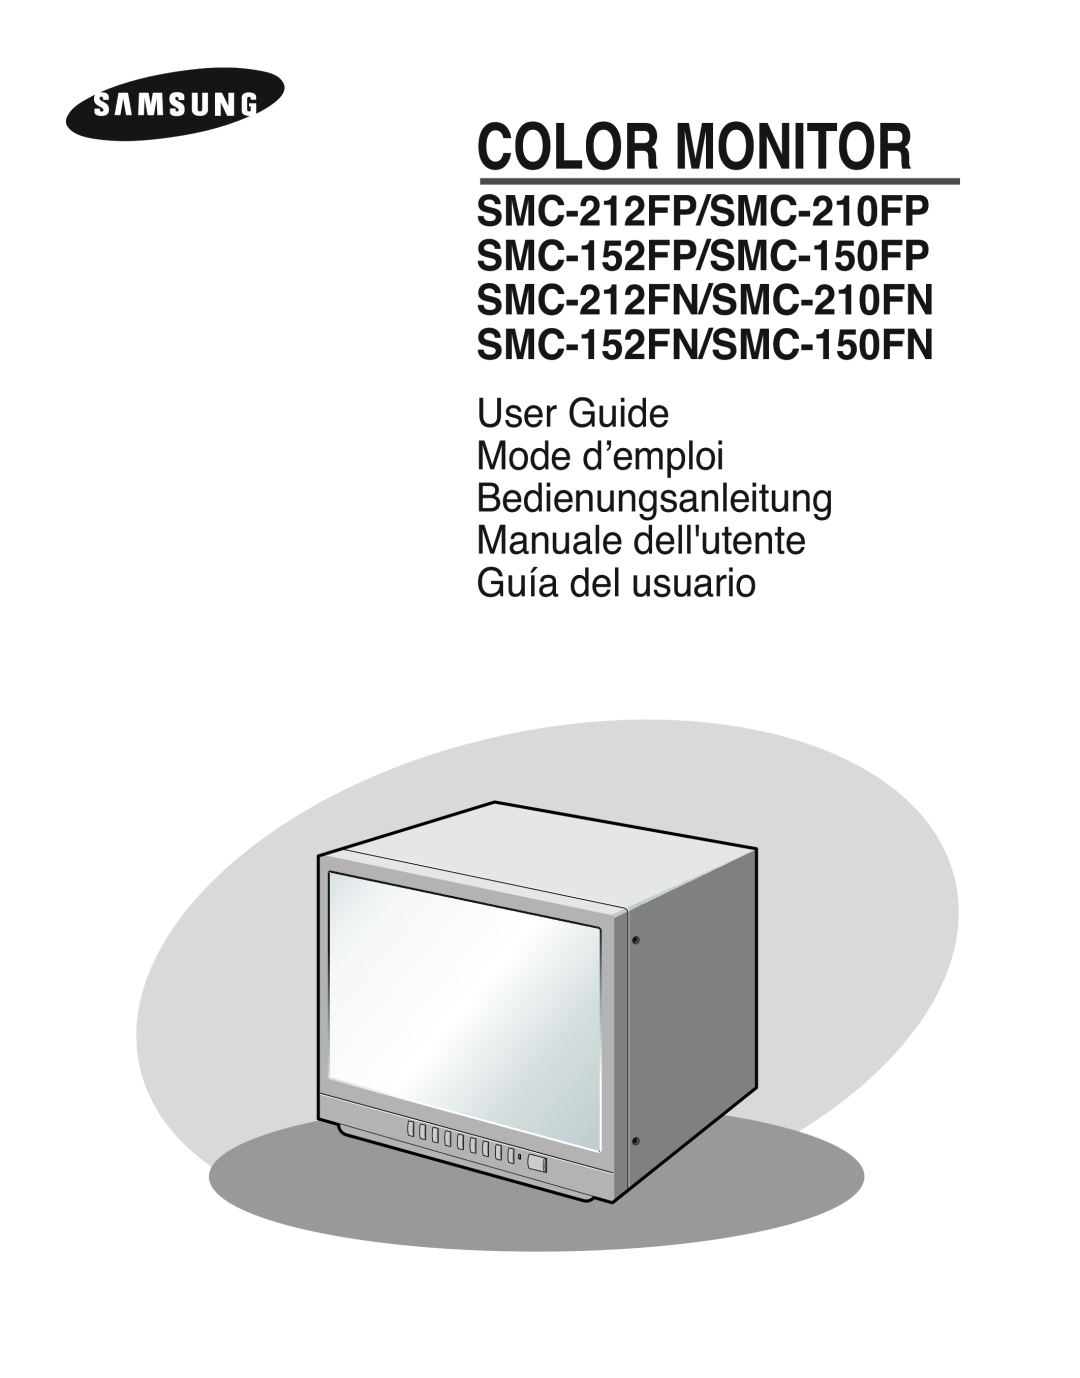 Samsung SMC-152FP manual Color Monitor, Manuale dellutente 